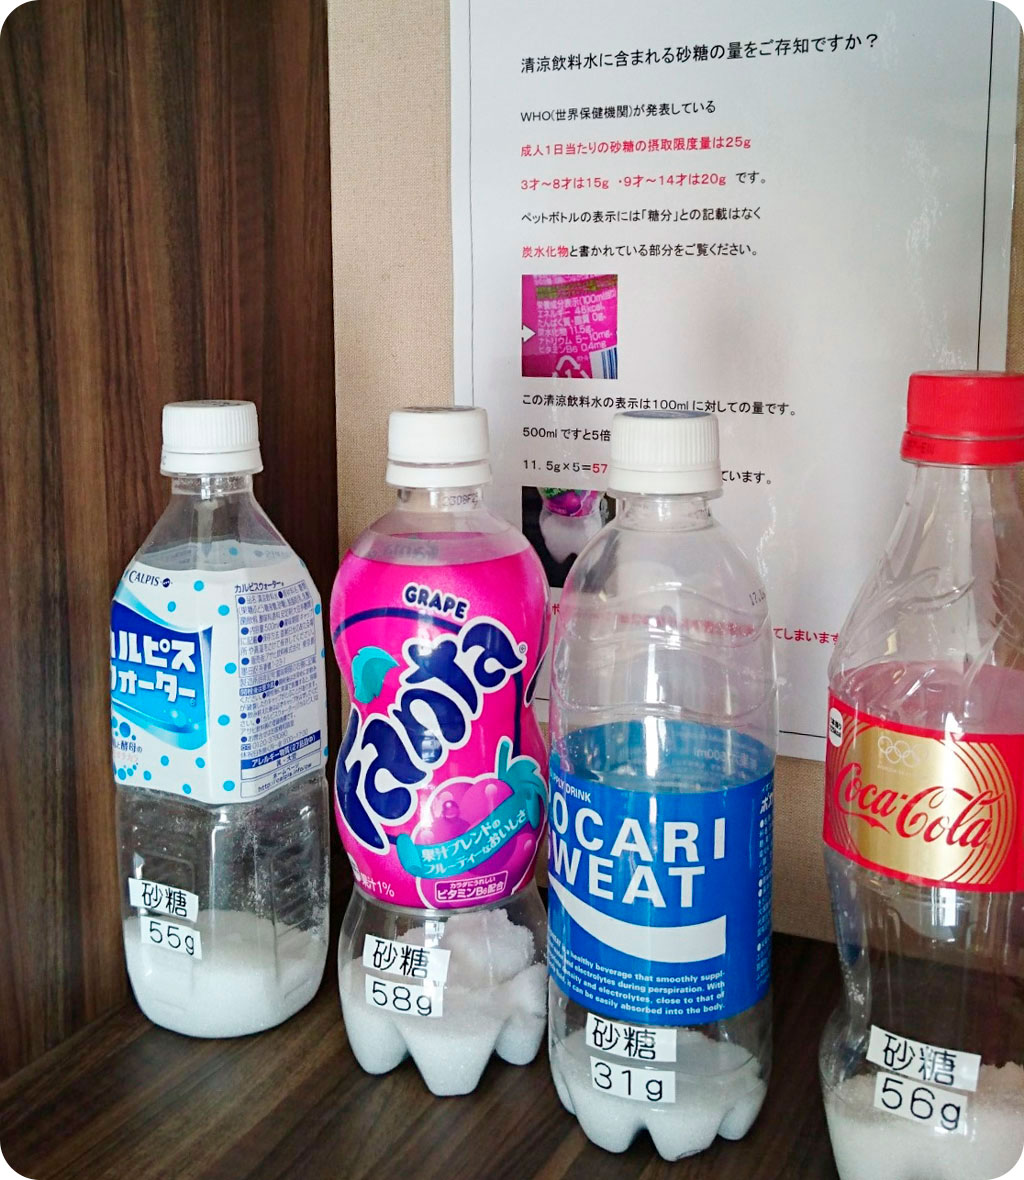 砂糖の含有量を示したペットボトルの掲示物